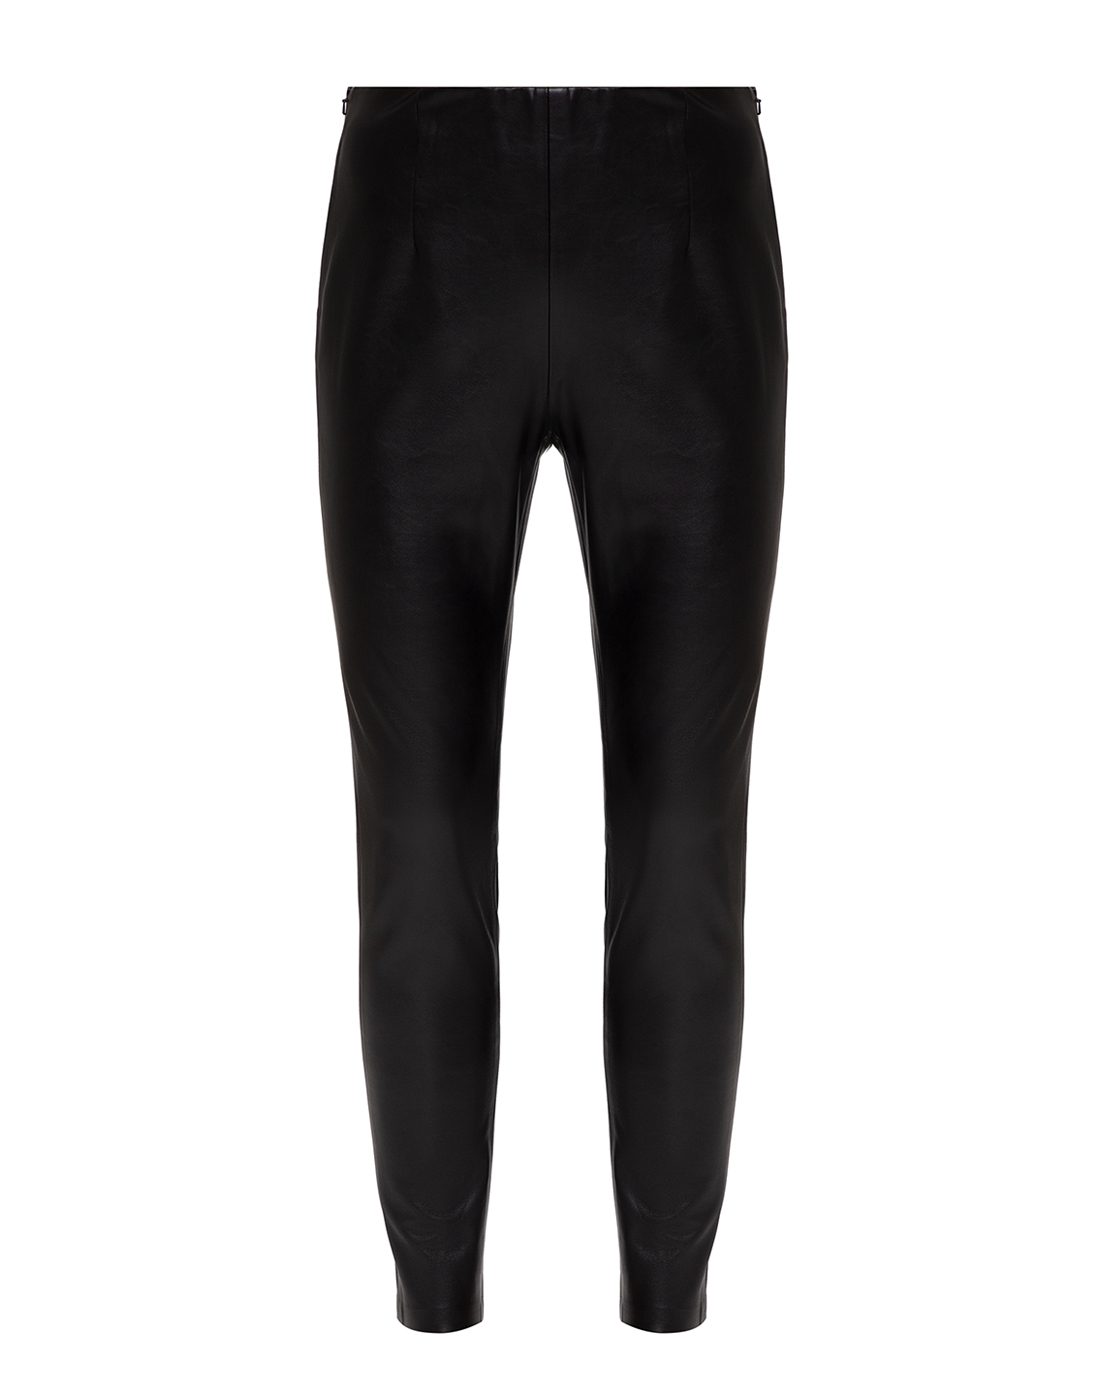 Женские черные брюки Dorothee Schumacher S646403/999-1